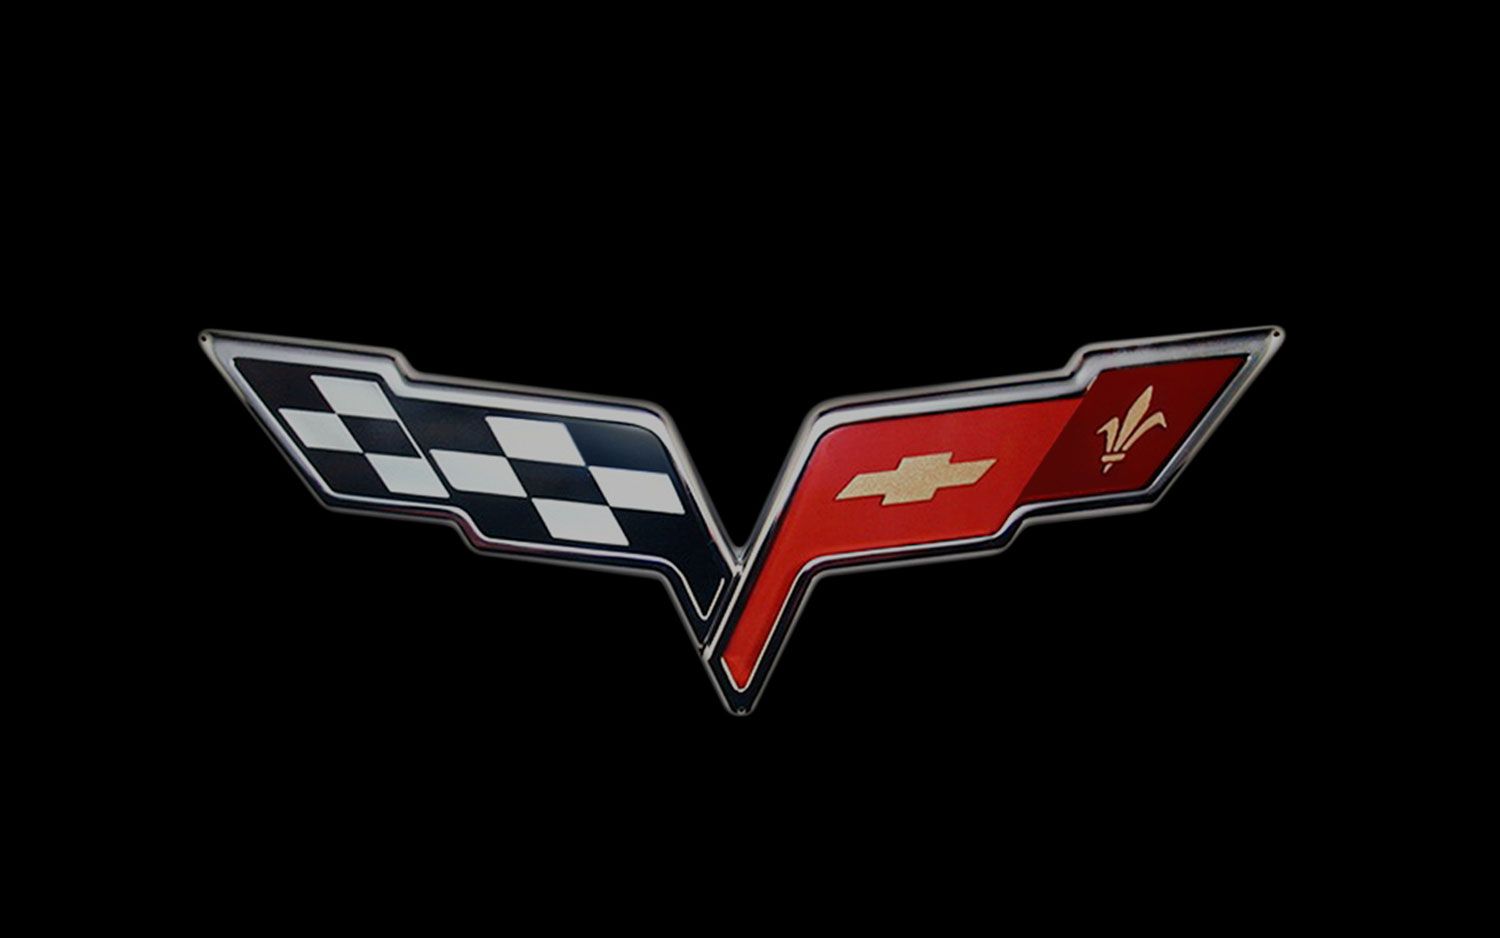 Corvette logo wallpaper